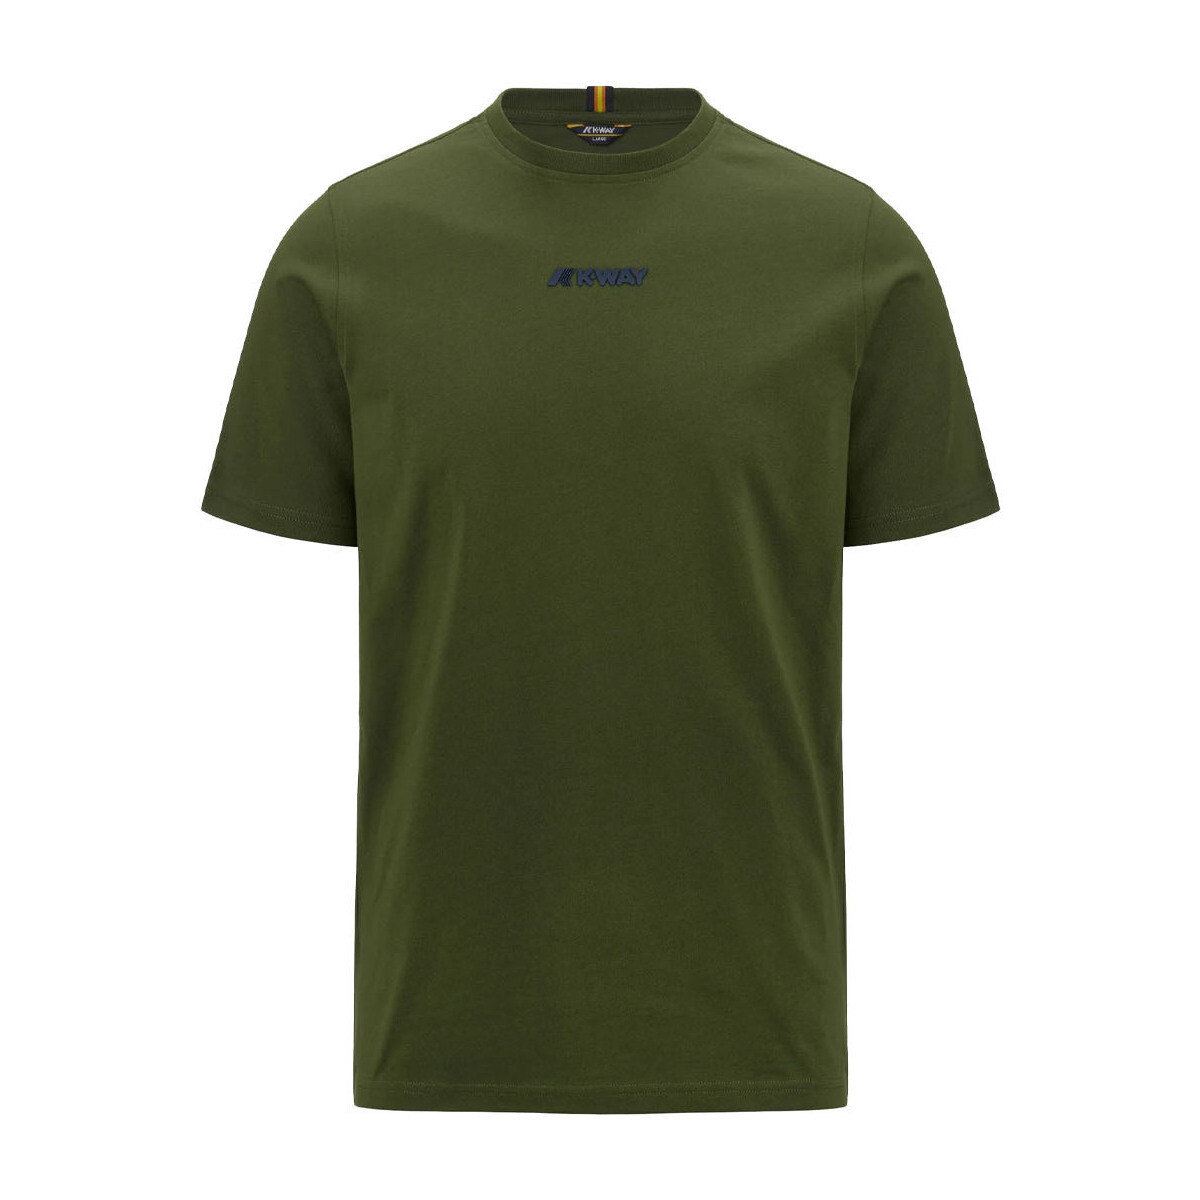 Vêtements Homme T-shirts manches courtes K-Way k4124dw-h11 Vert